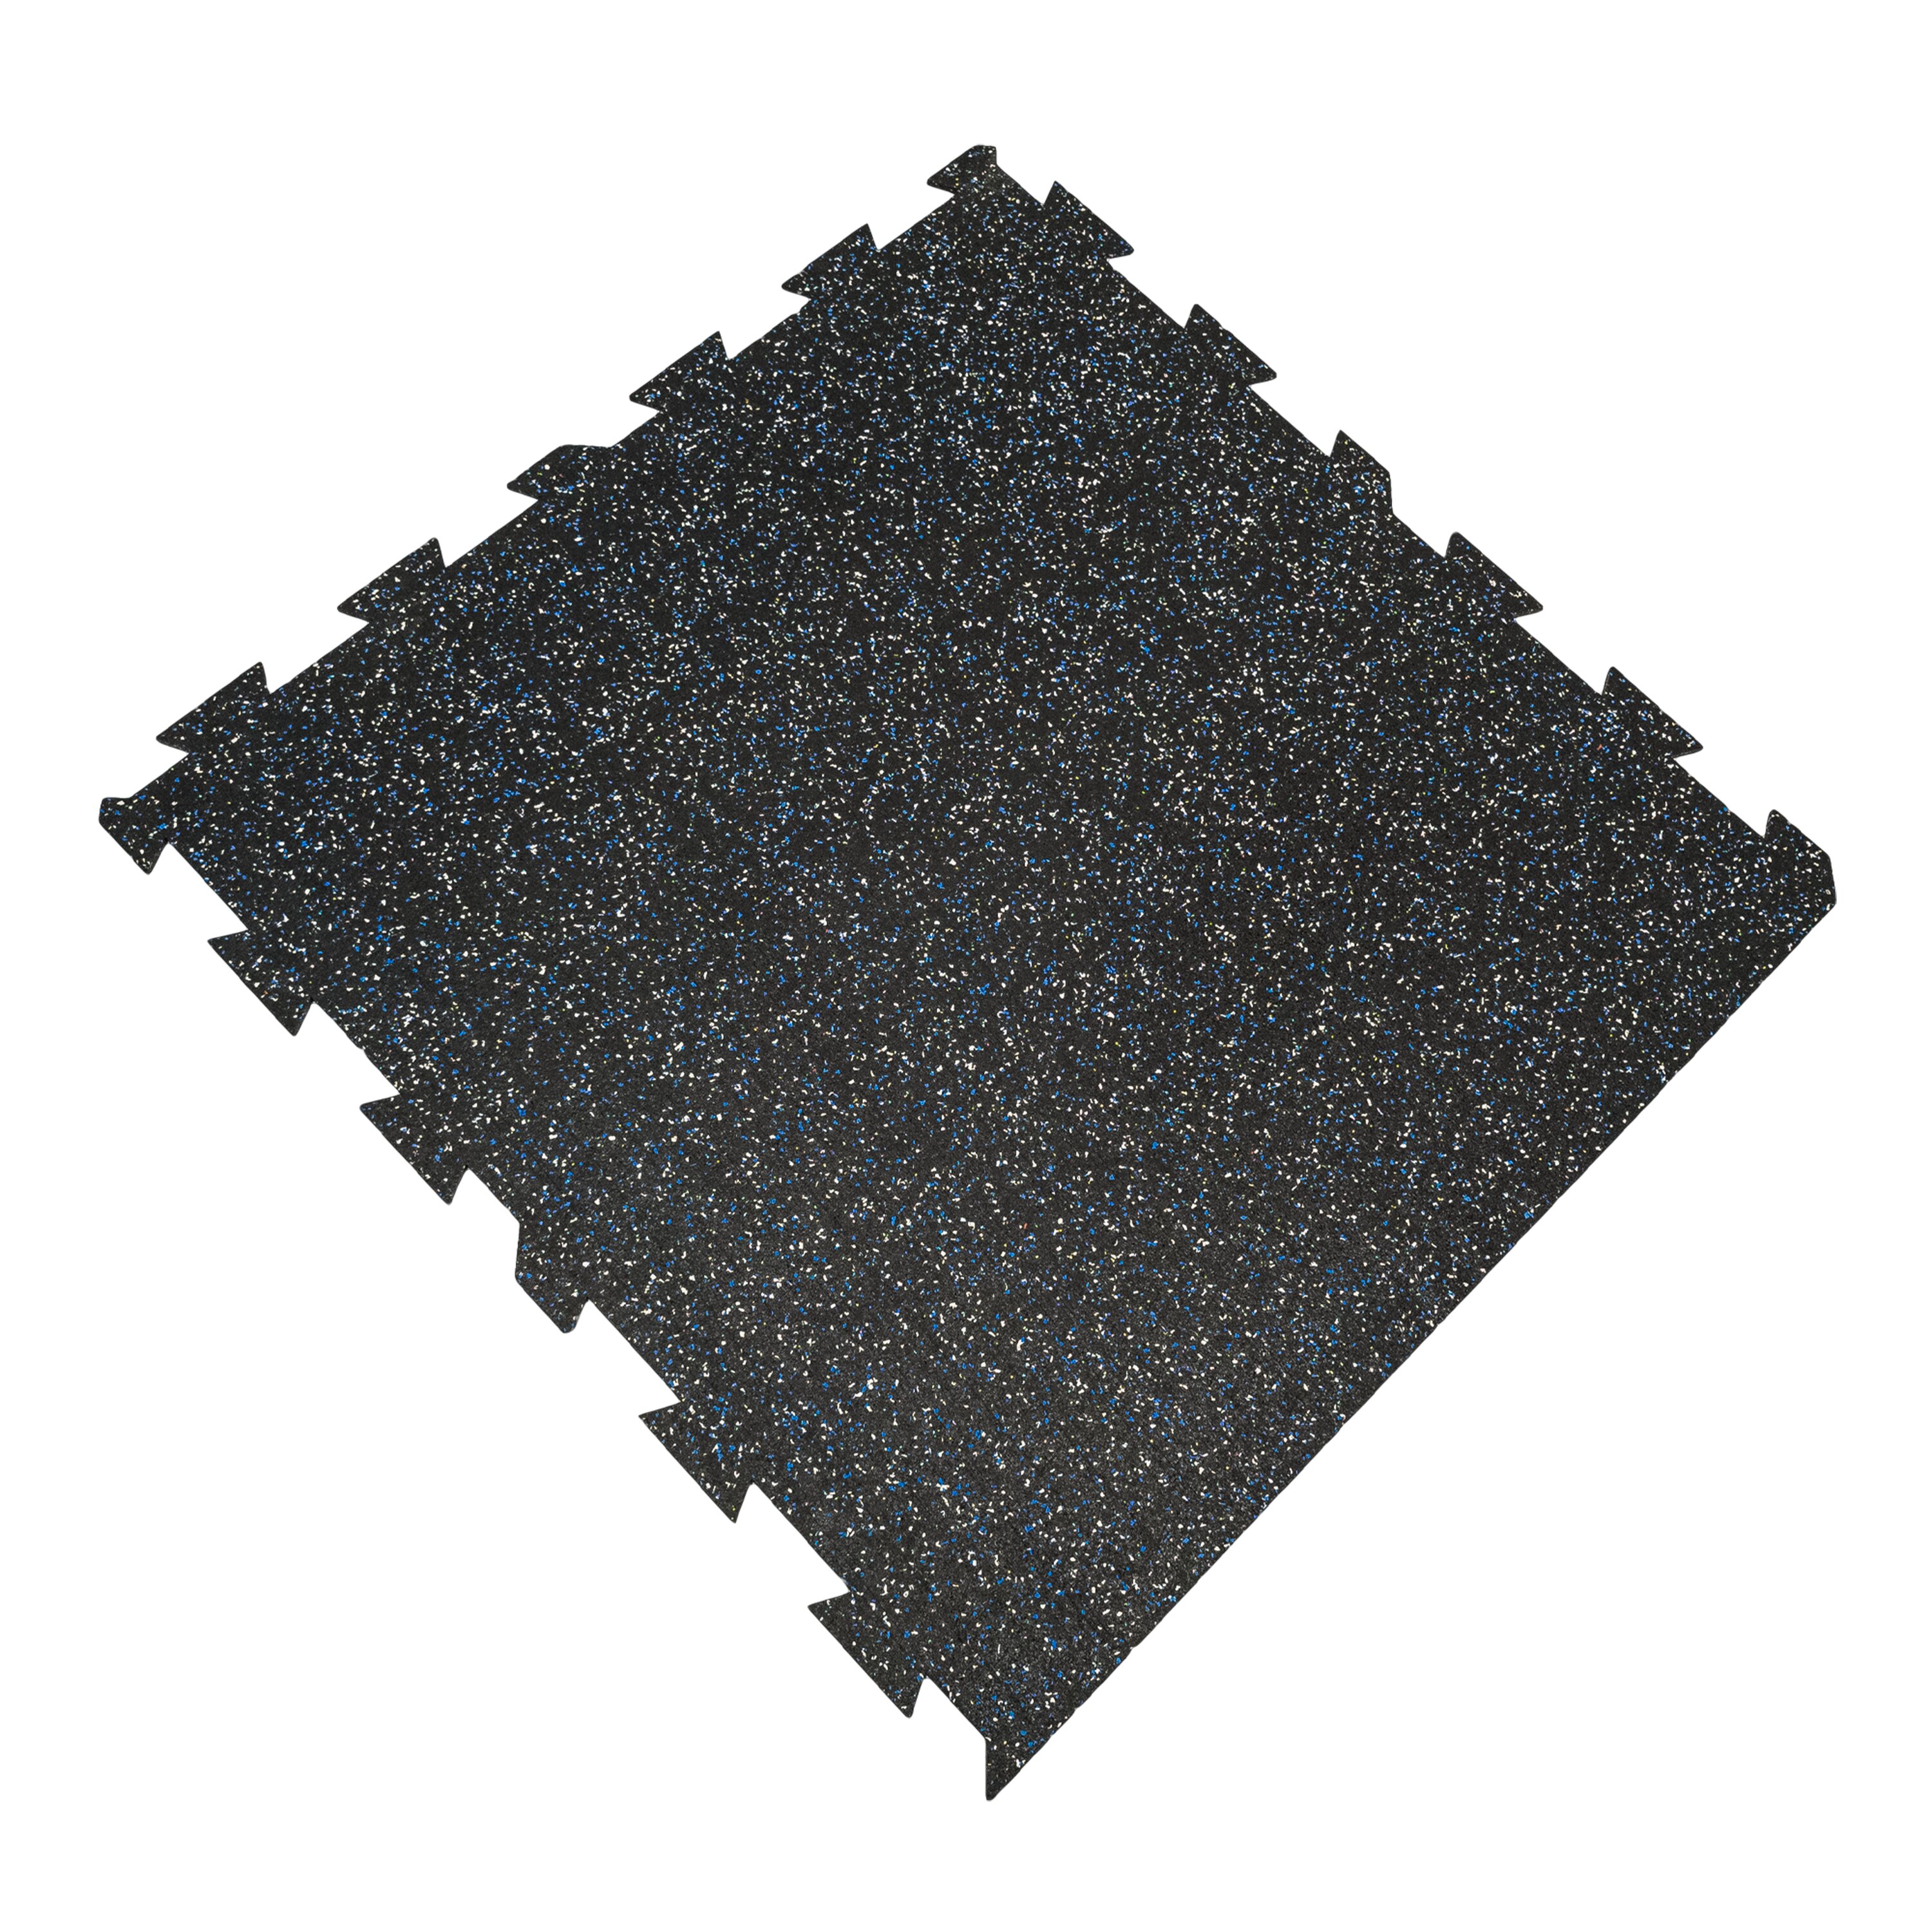 Čierno-bielo-modrá gumová modulová puzzle dlažba (okraj) FLOMA FitFlo SF1050 - dĺžka 100 cm, šírka 100 cm, výška 1,6 cm